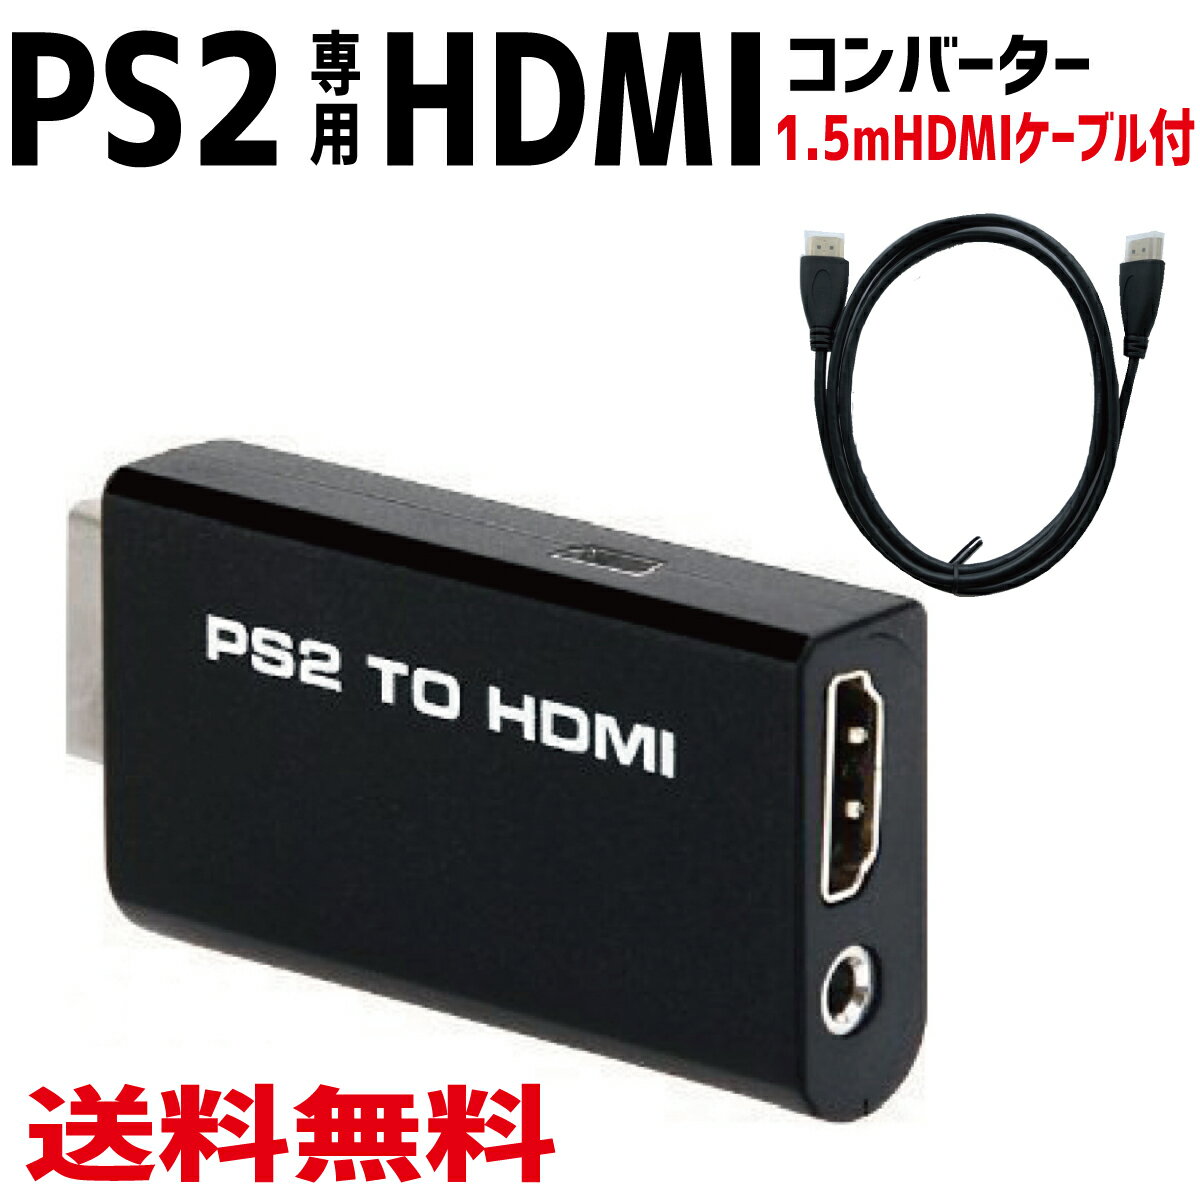 PS2 TO HDMI コンバーター PS2専用 PS2 to HDMI 接続コネクタ 変換 アダプ ...